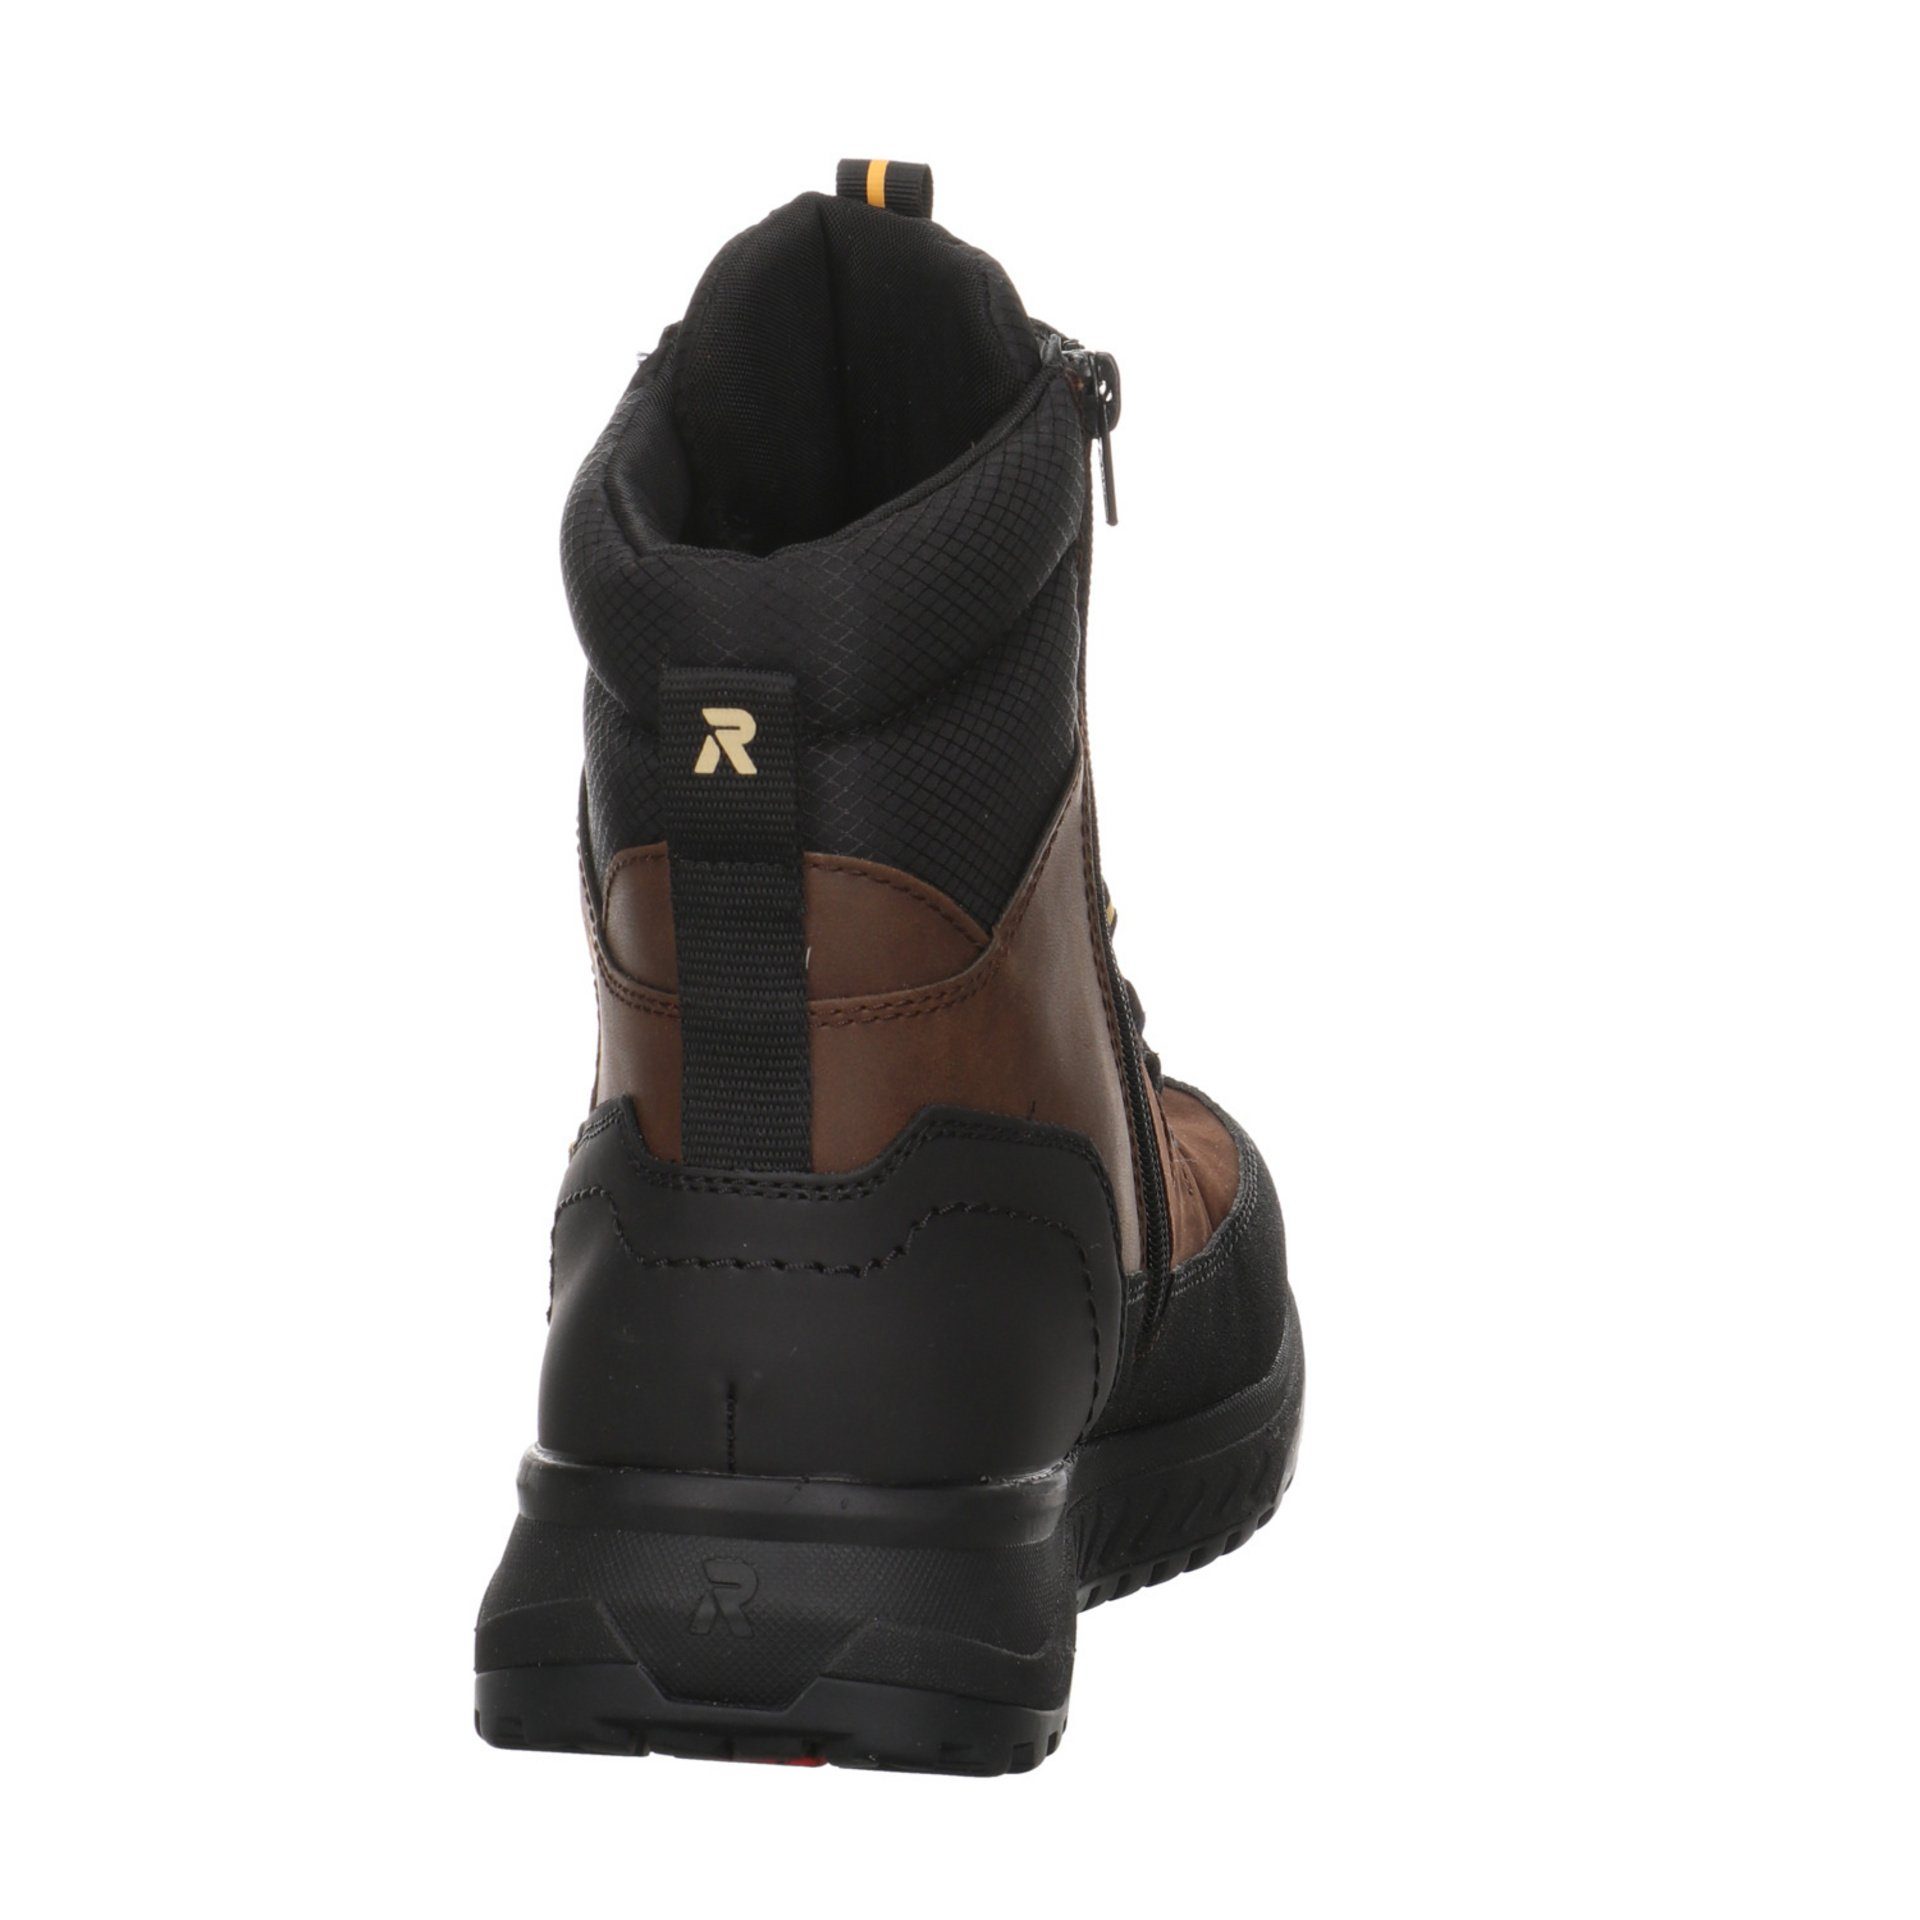 Rieker Herren braun Winterstiefel Snowboots dunkel Leder-/Textilkombination Boots Elegant Freizeit Schuhe